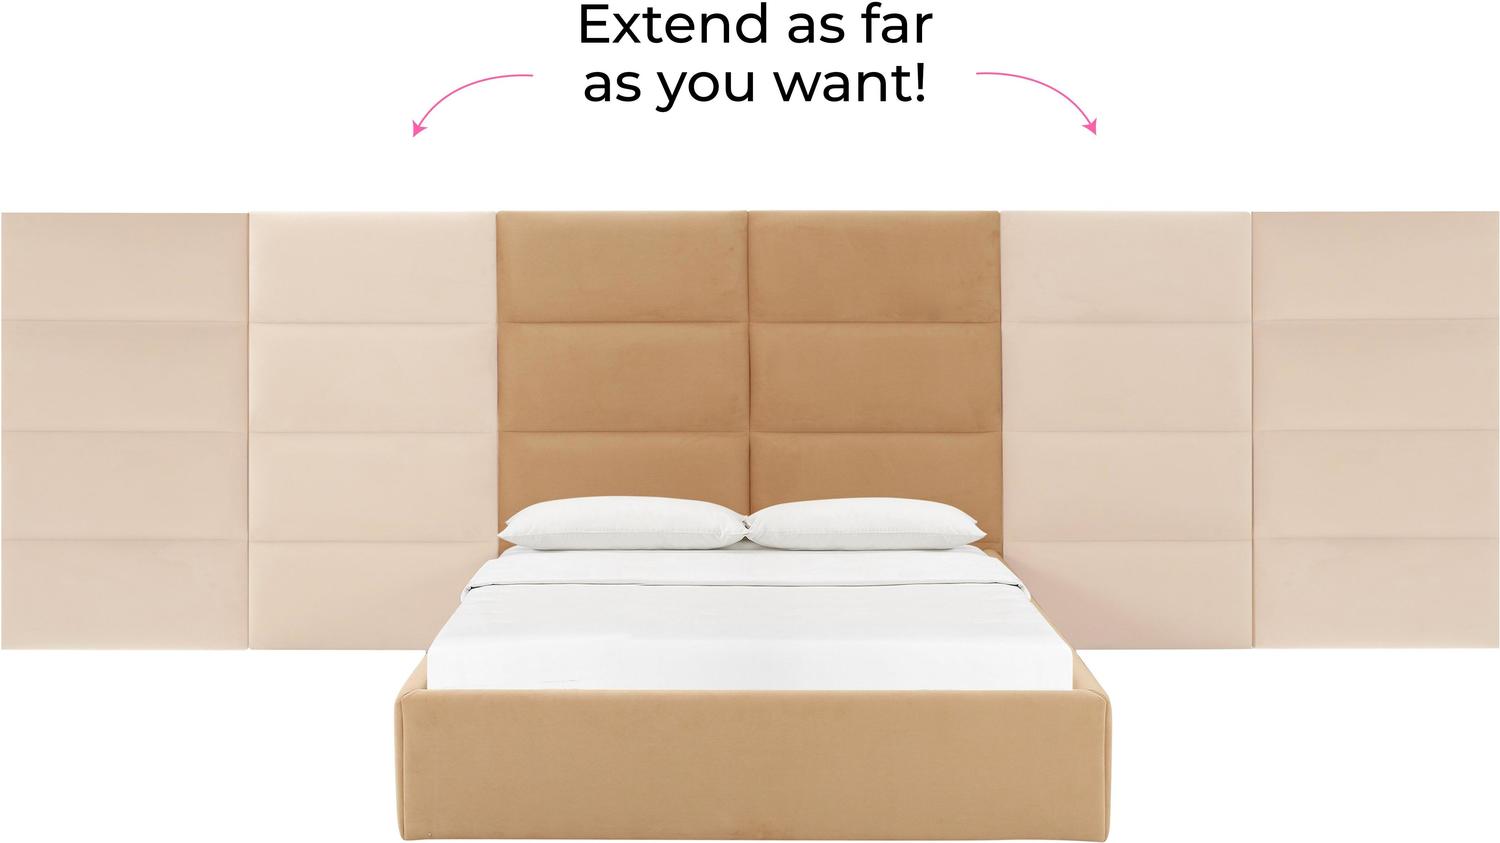 modern bed base Tov Furniture Beds Honey